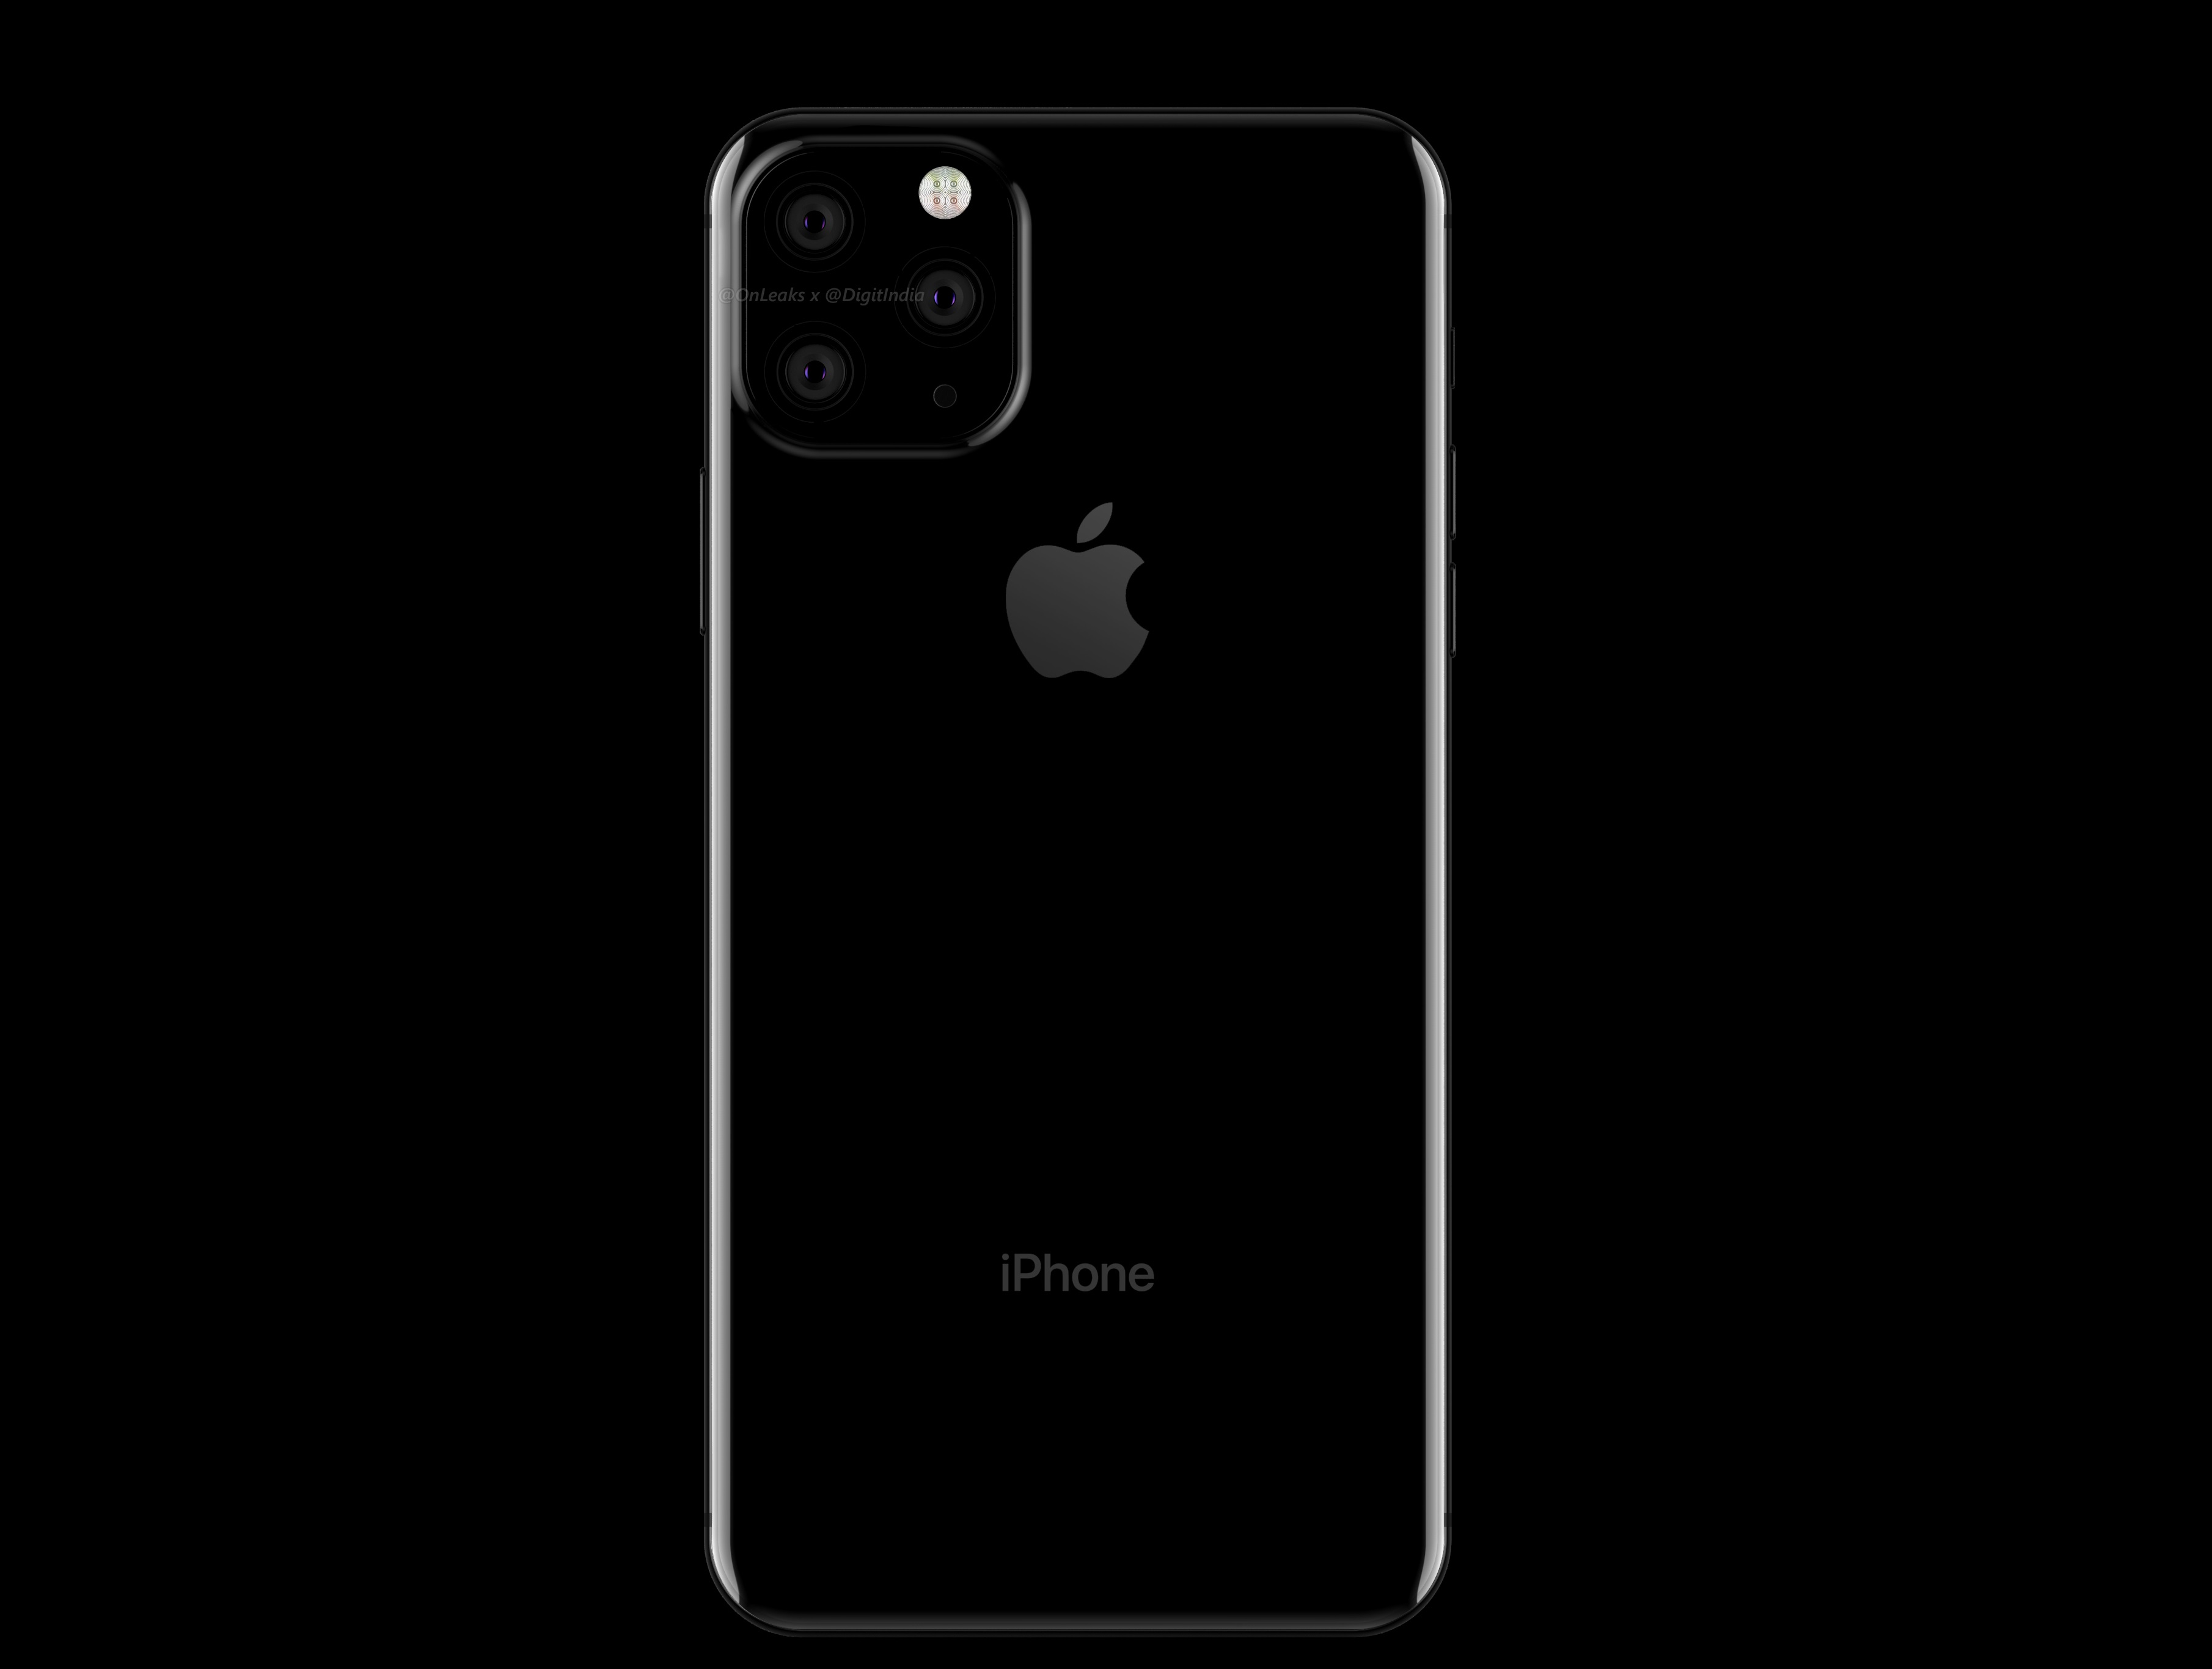 דיווח: iPhone XI ו-iPhone XI Max יגיעו עם 3 מצלמות אחוריות